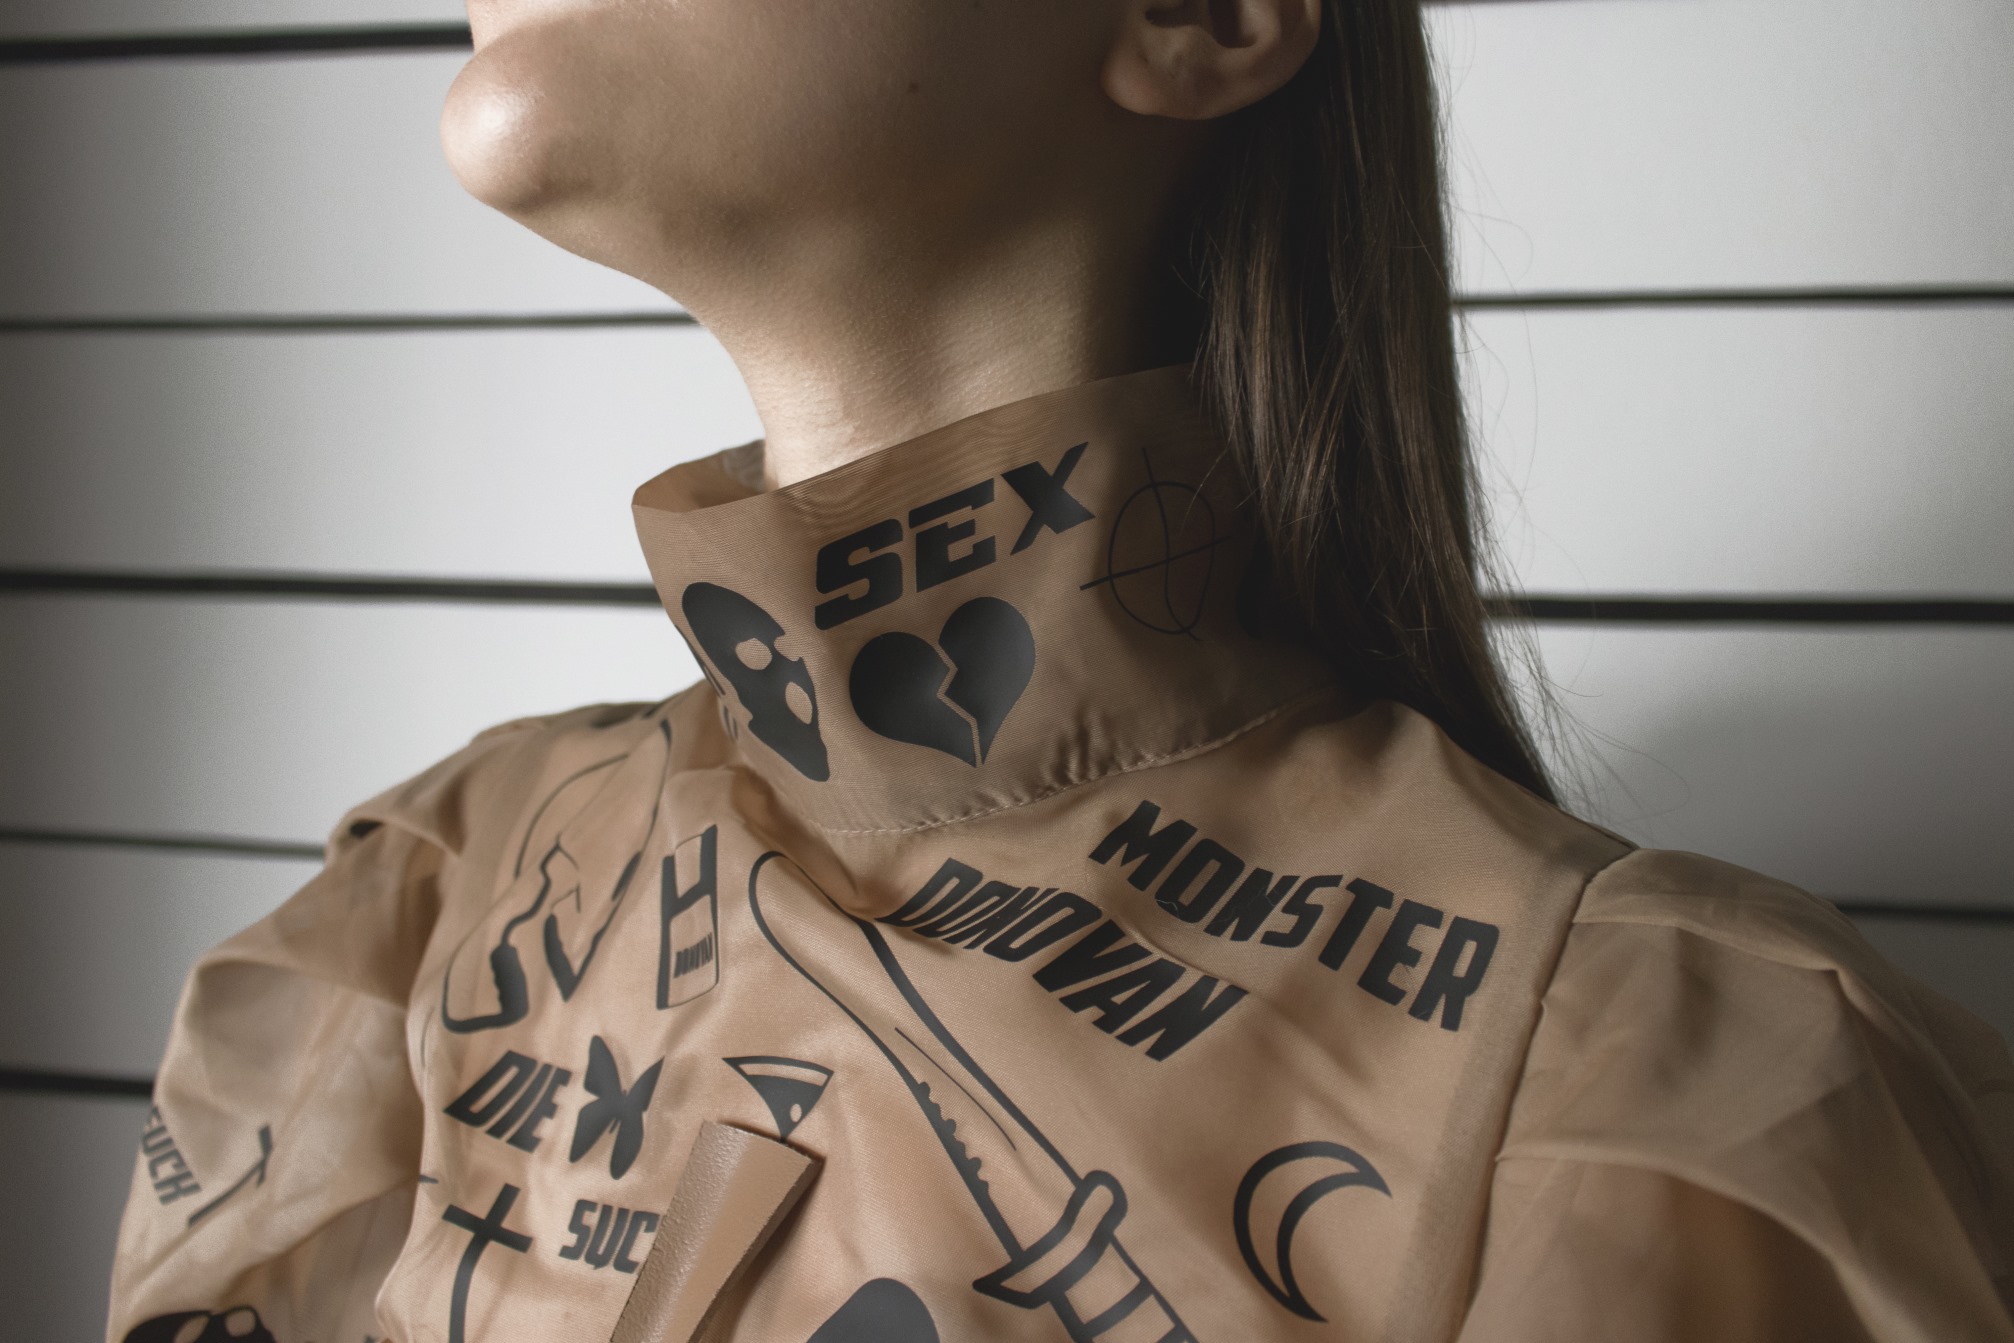 Modni fotograf Donovan Pavleković predstavlja diplomski rad na temu toksičnog maskuliniteta i odnosa prema ženskom tijelu